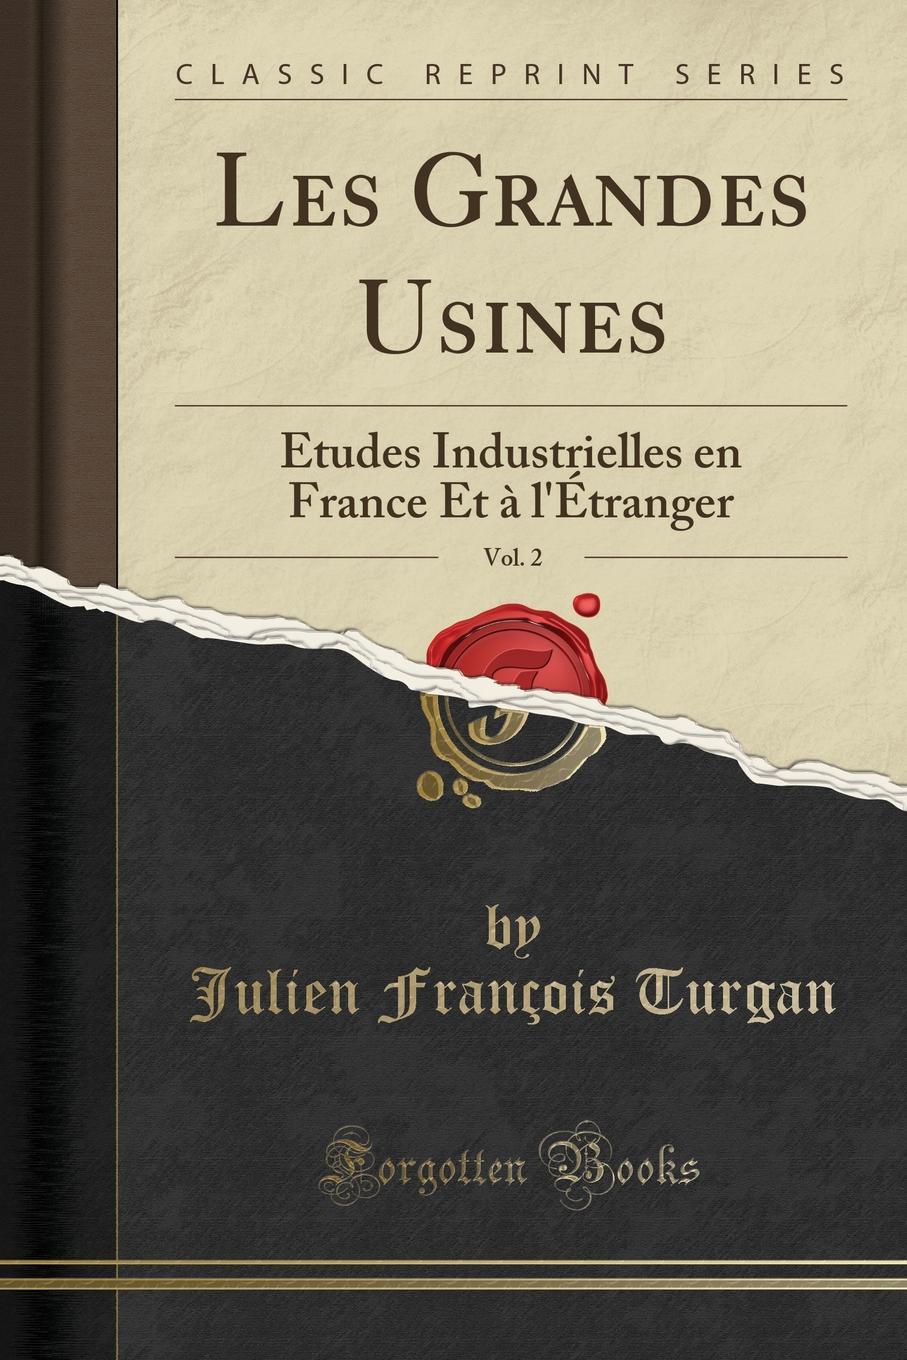 Julien François Turgan Les Grandes Usines, Vol. 2. Etudes Industrielles en France Et a l.Etranger (Classic Reprint)